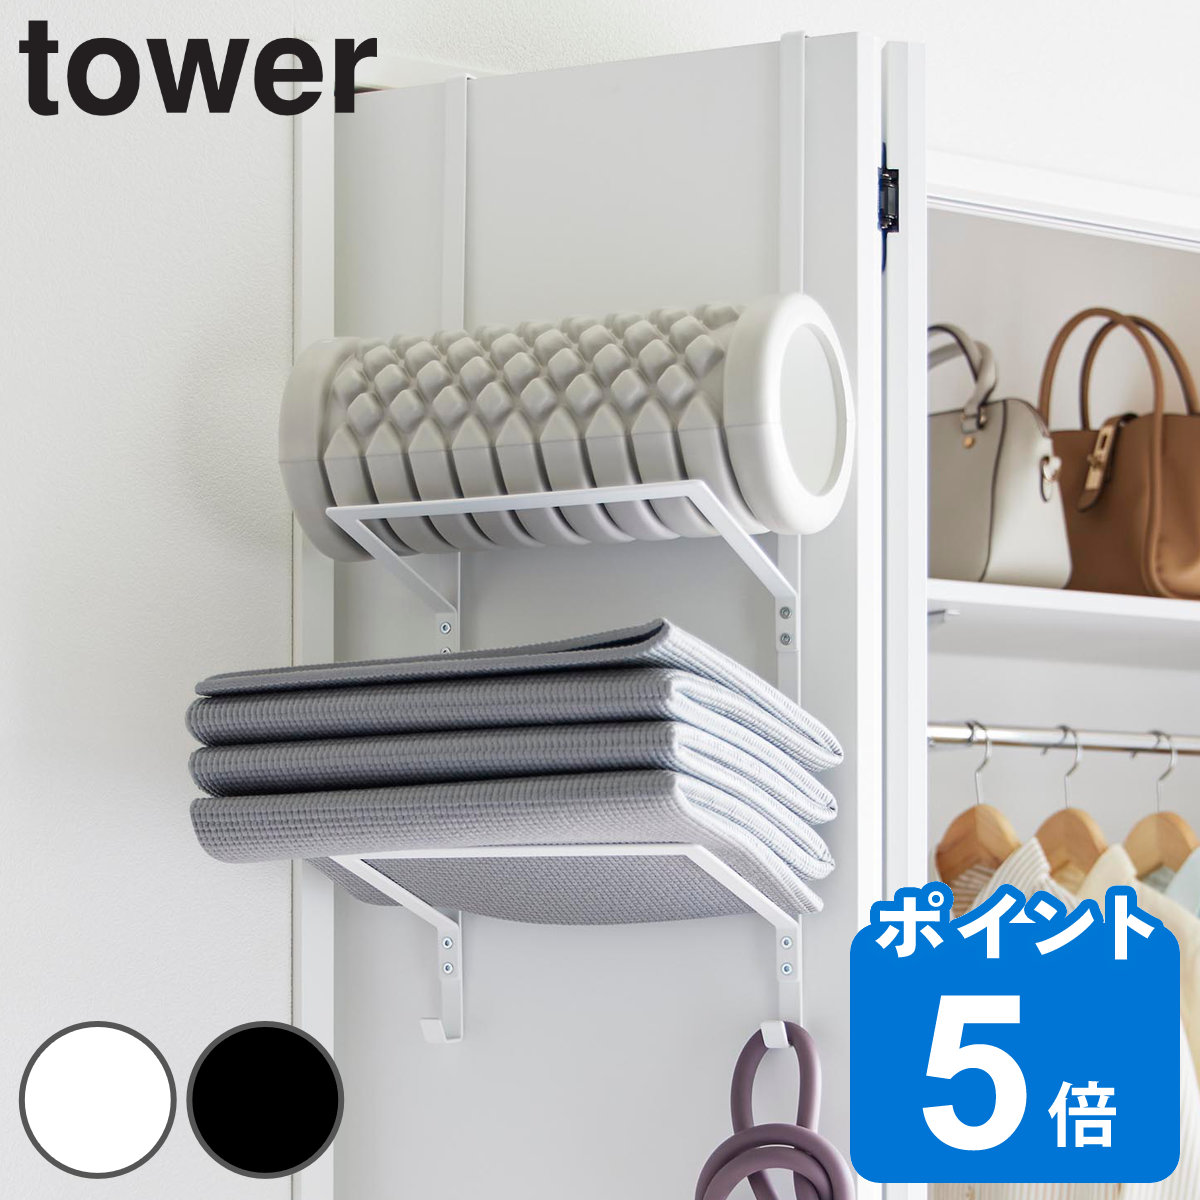 山崎実業 tower フィットネスグッズ収納ハンガー タワー